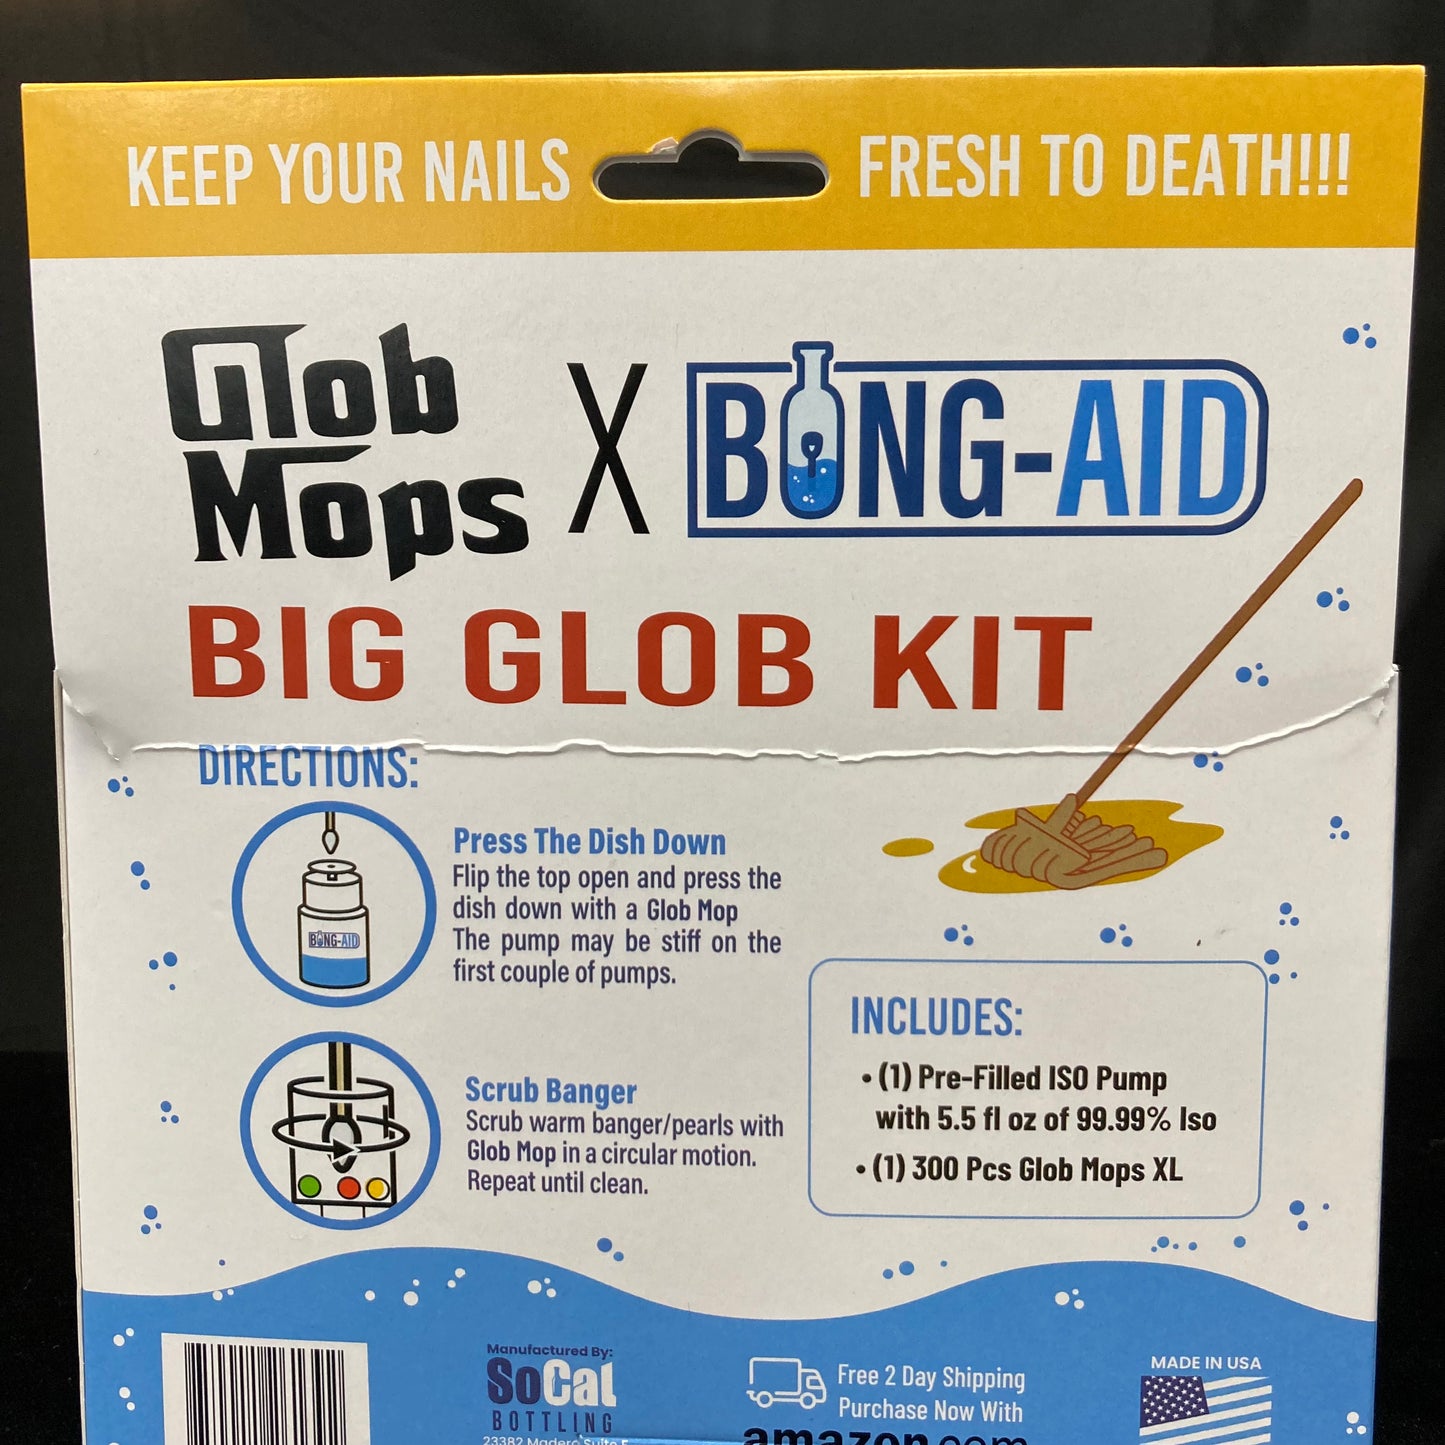 Glob mops X Bong Aid